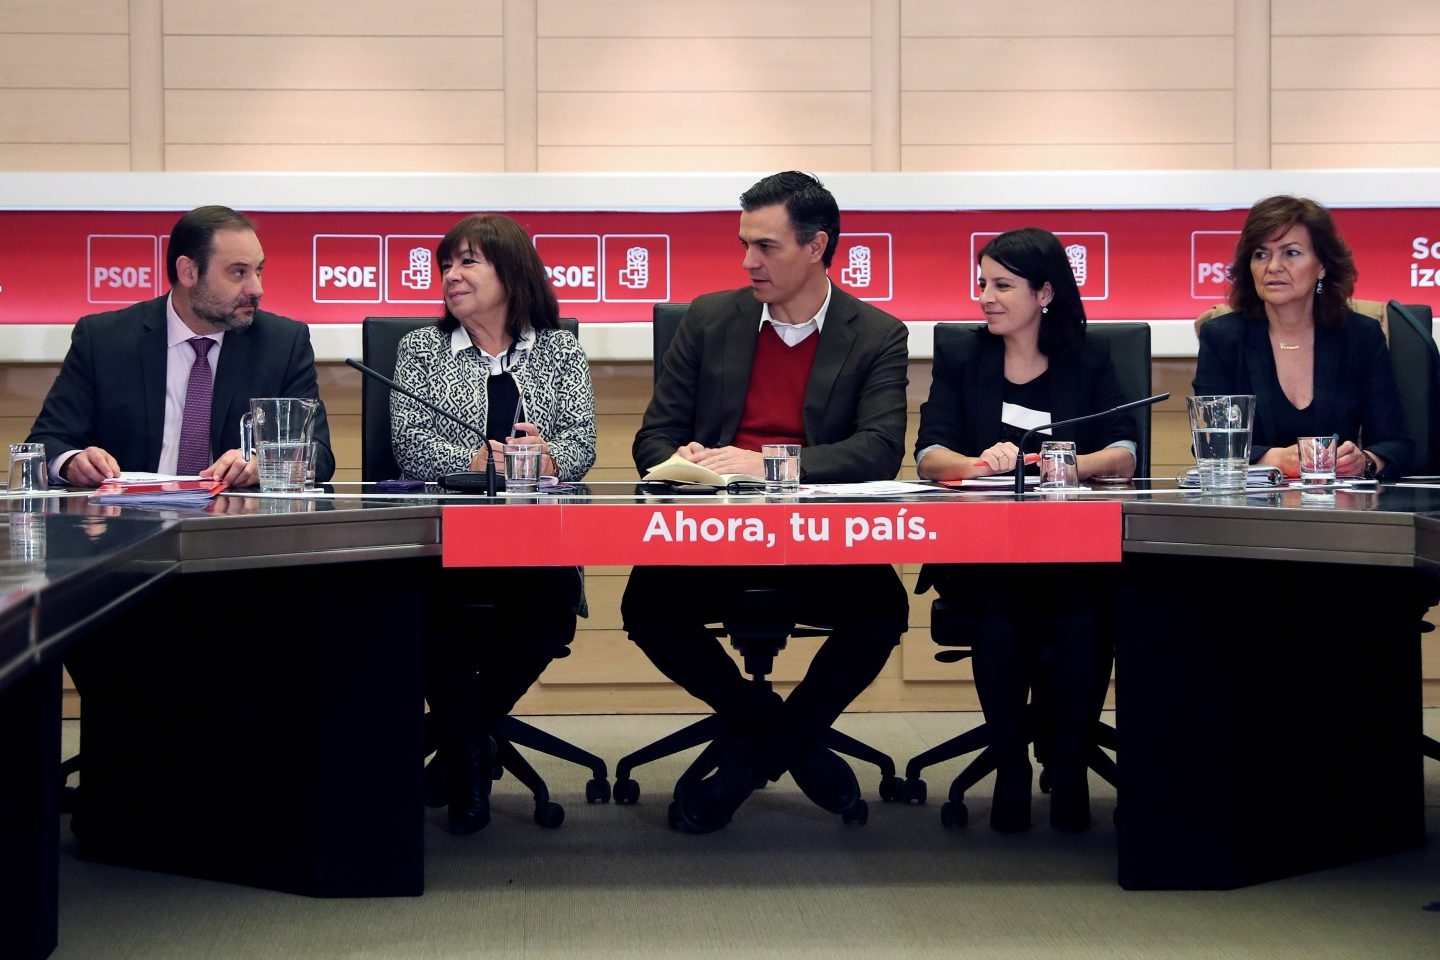 El PSOE, contra los jueces: "Es una muy mala noticia en lo político y en lo judicial"